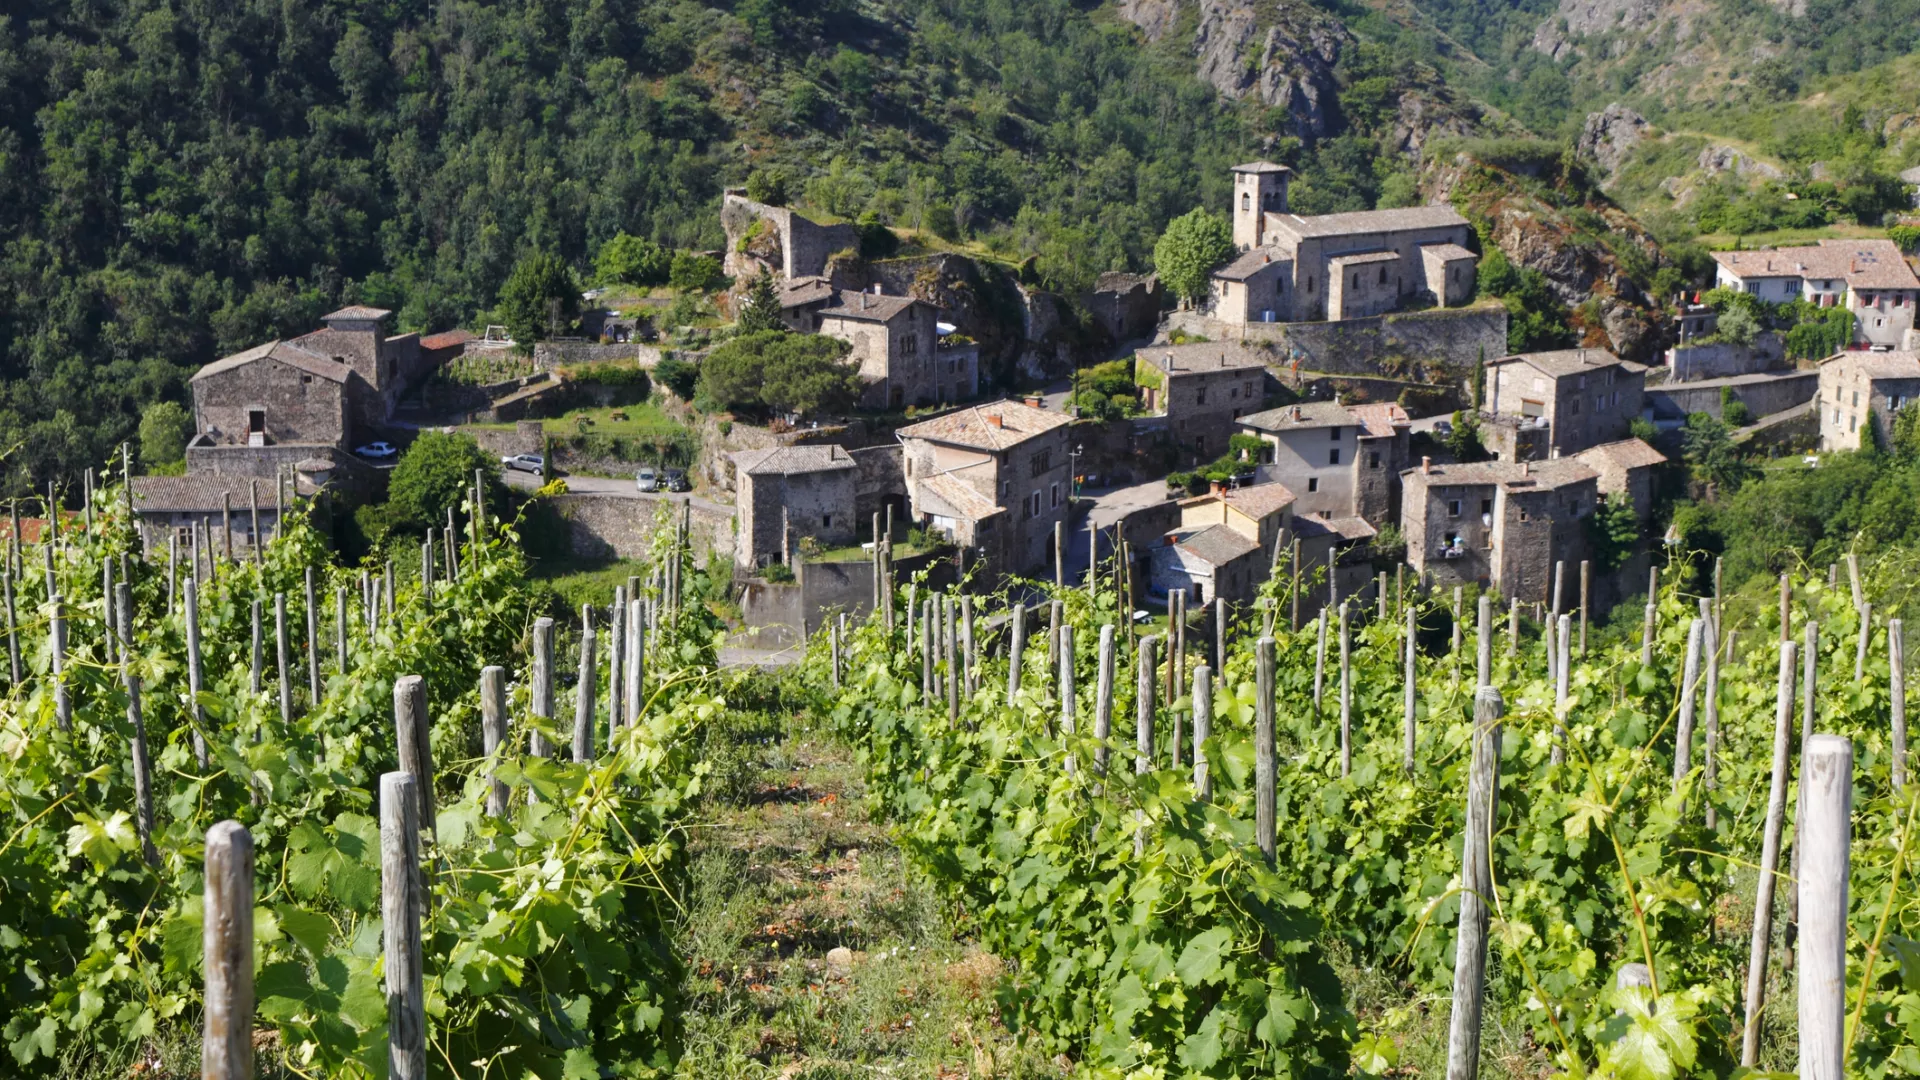 Vignoble Vallée du Rhône